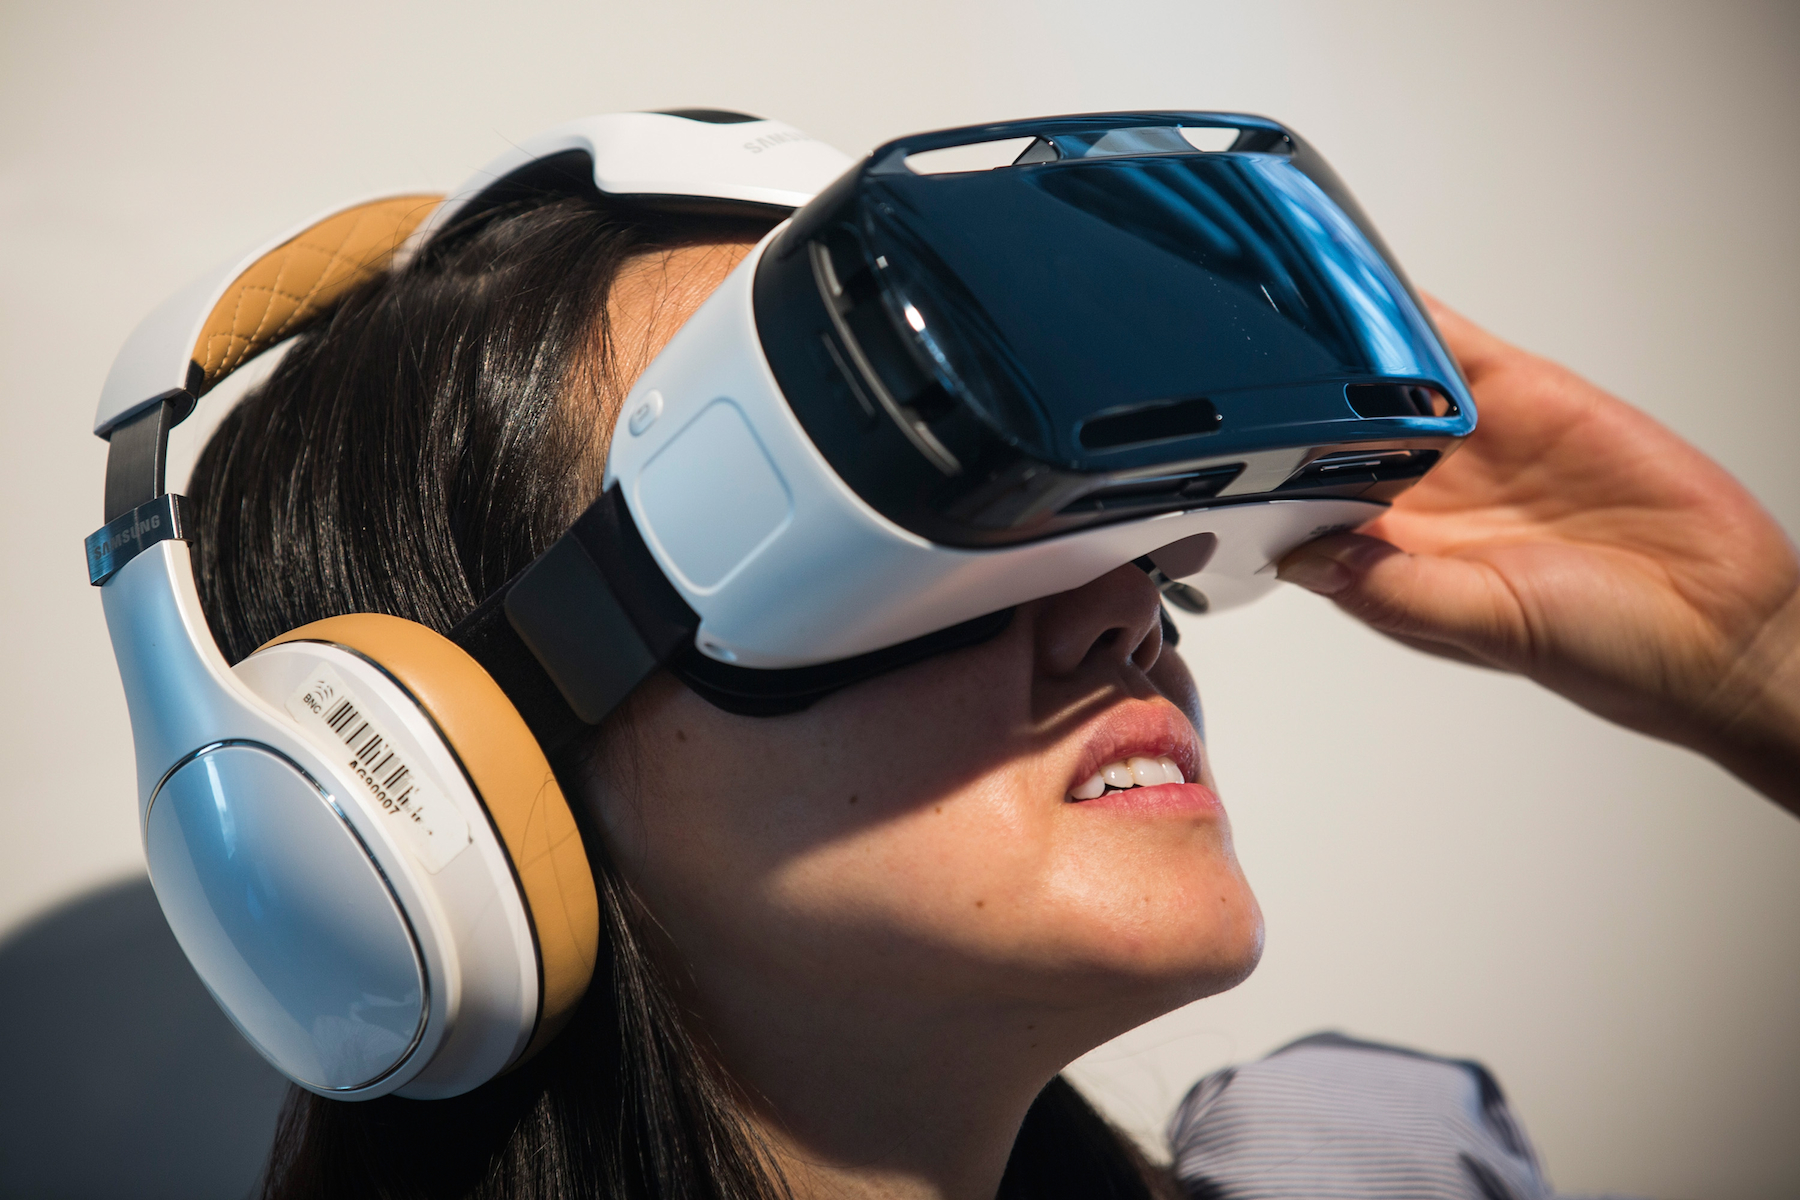 Objet publicitaire - Casque réalité virtuelle Samsung